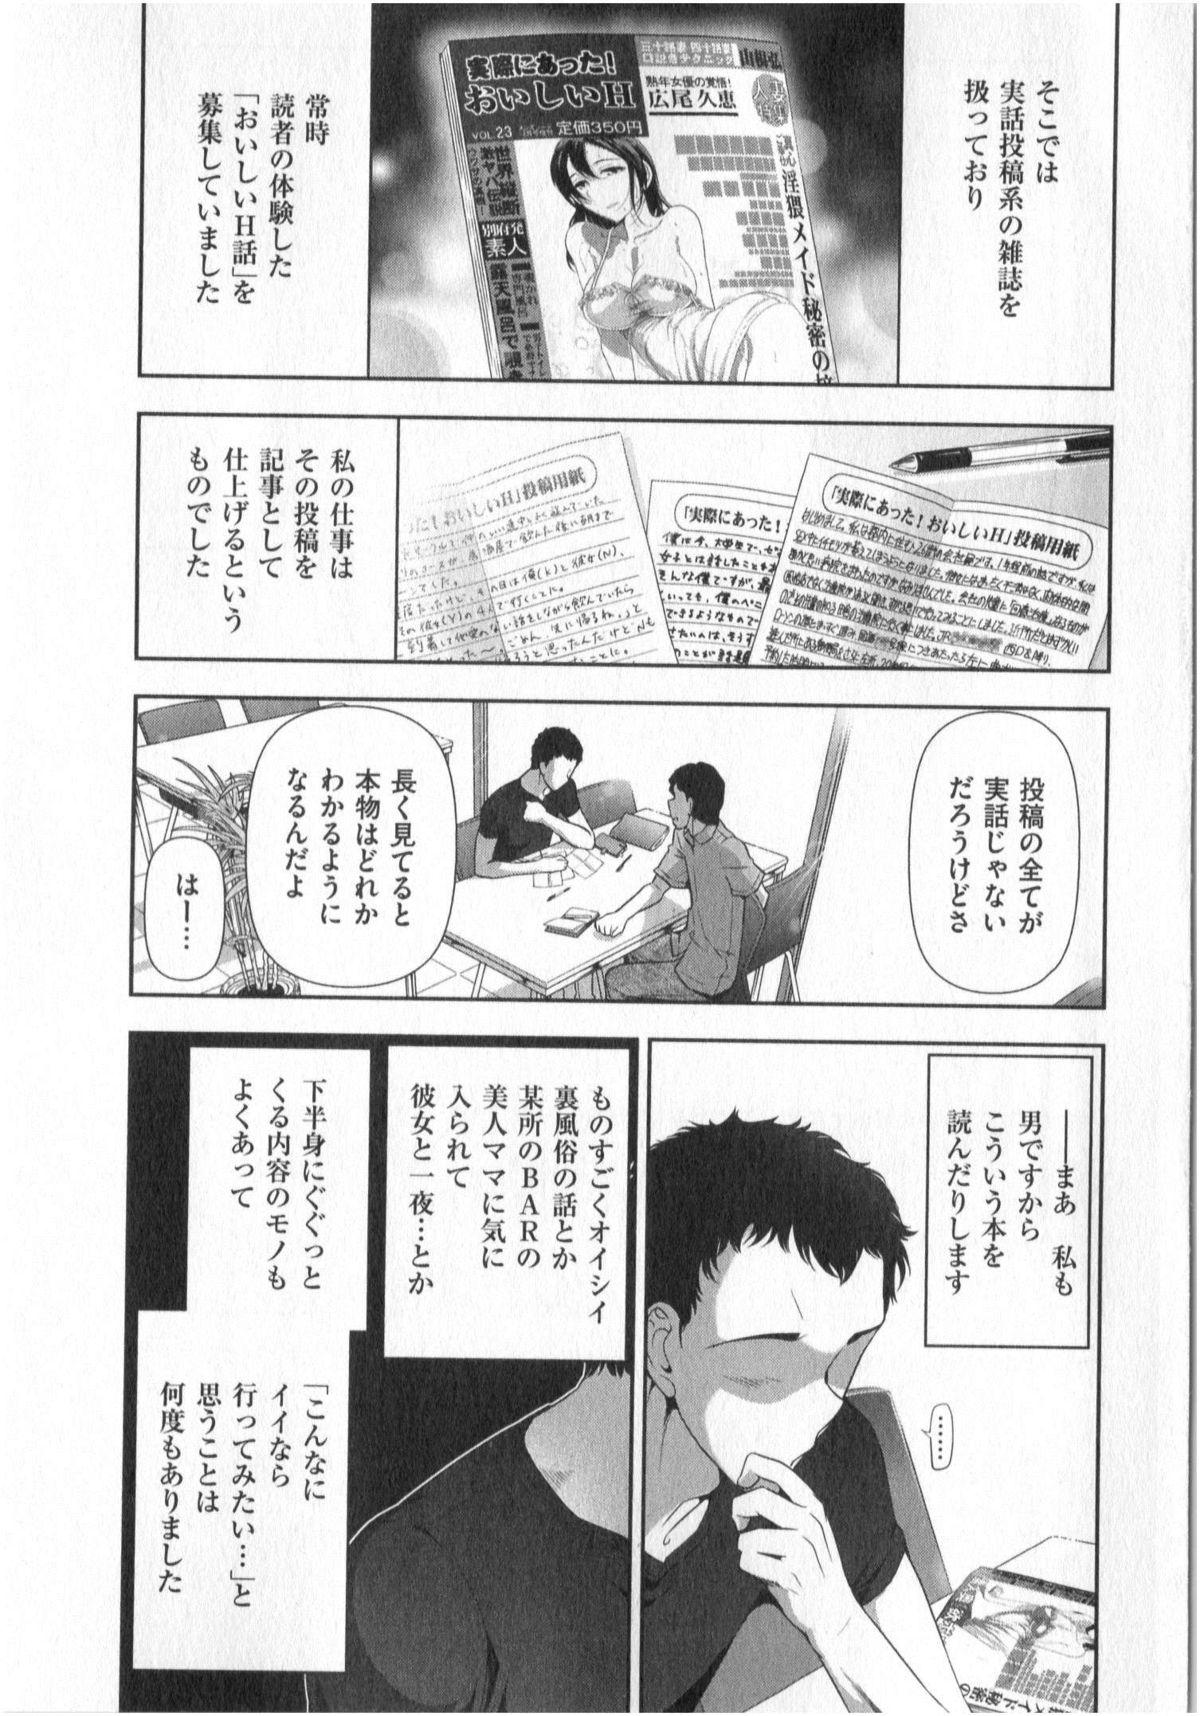 Yonimo Ecchi na Toshidensetsu vol. 01 6